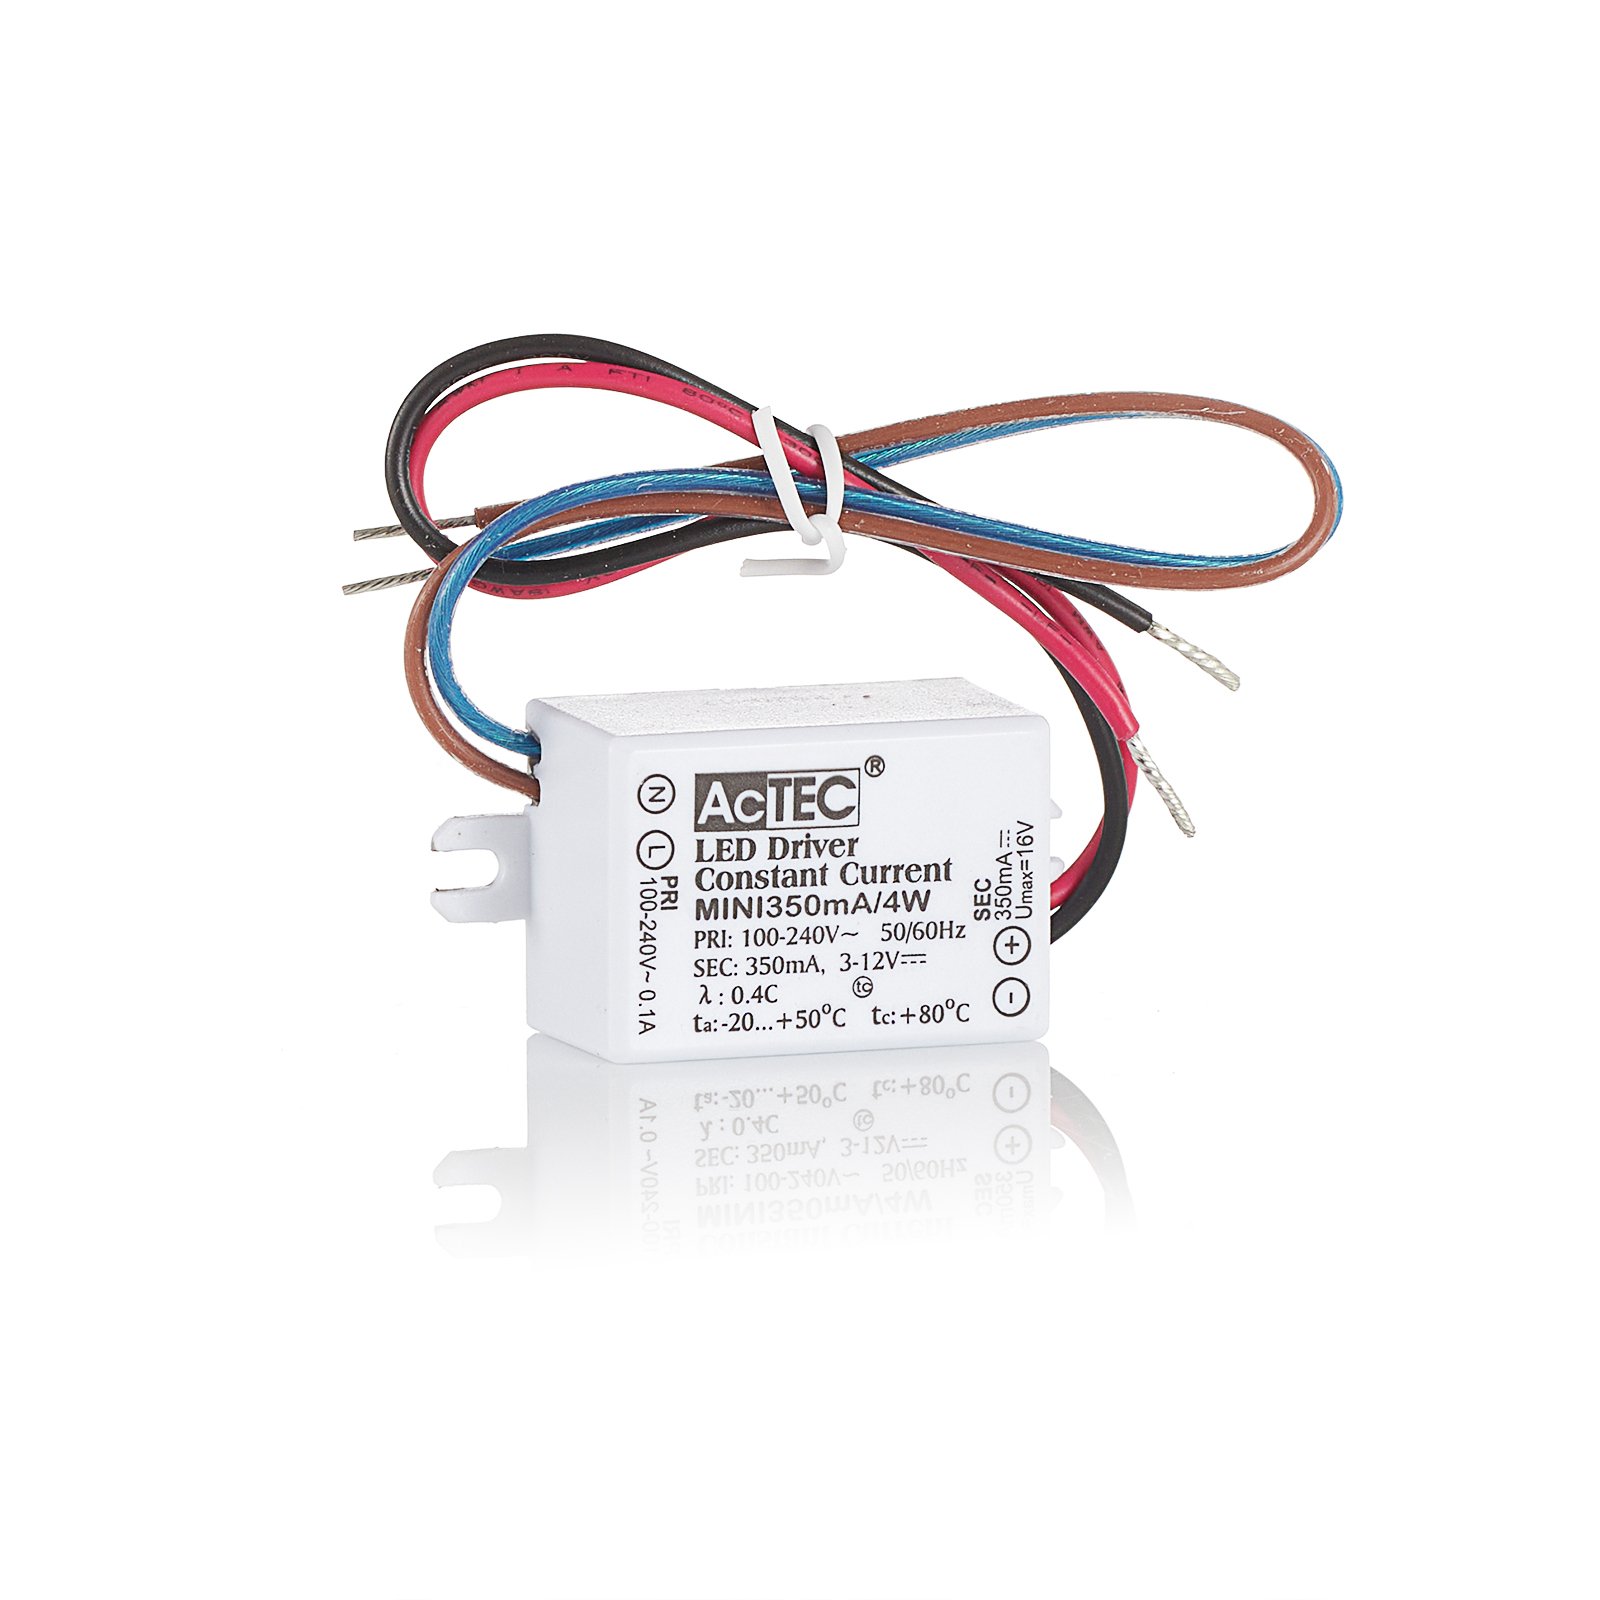 AcTEC Mini LED budič CC 700mA, 4 W, IP65